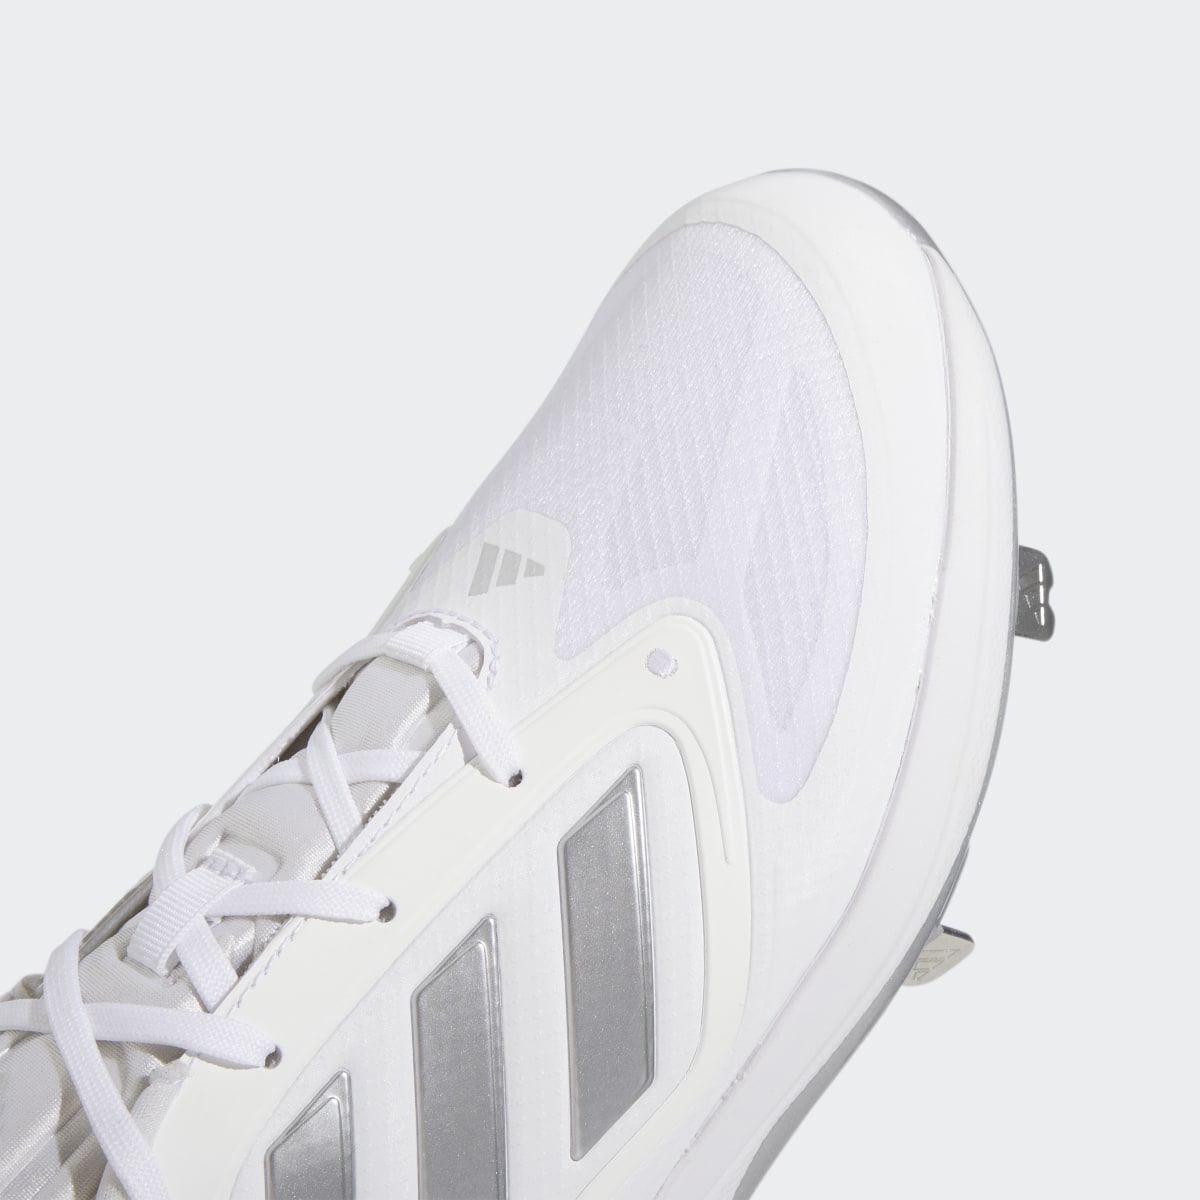 Adidas Adizero PureHustle 3 Elite Cleats. 8